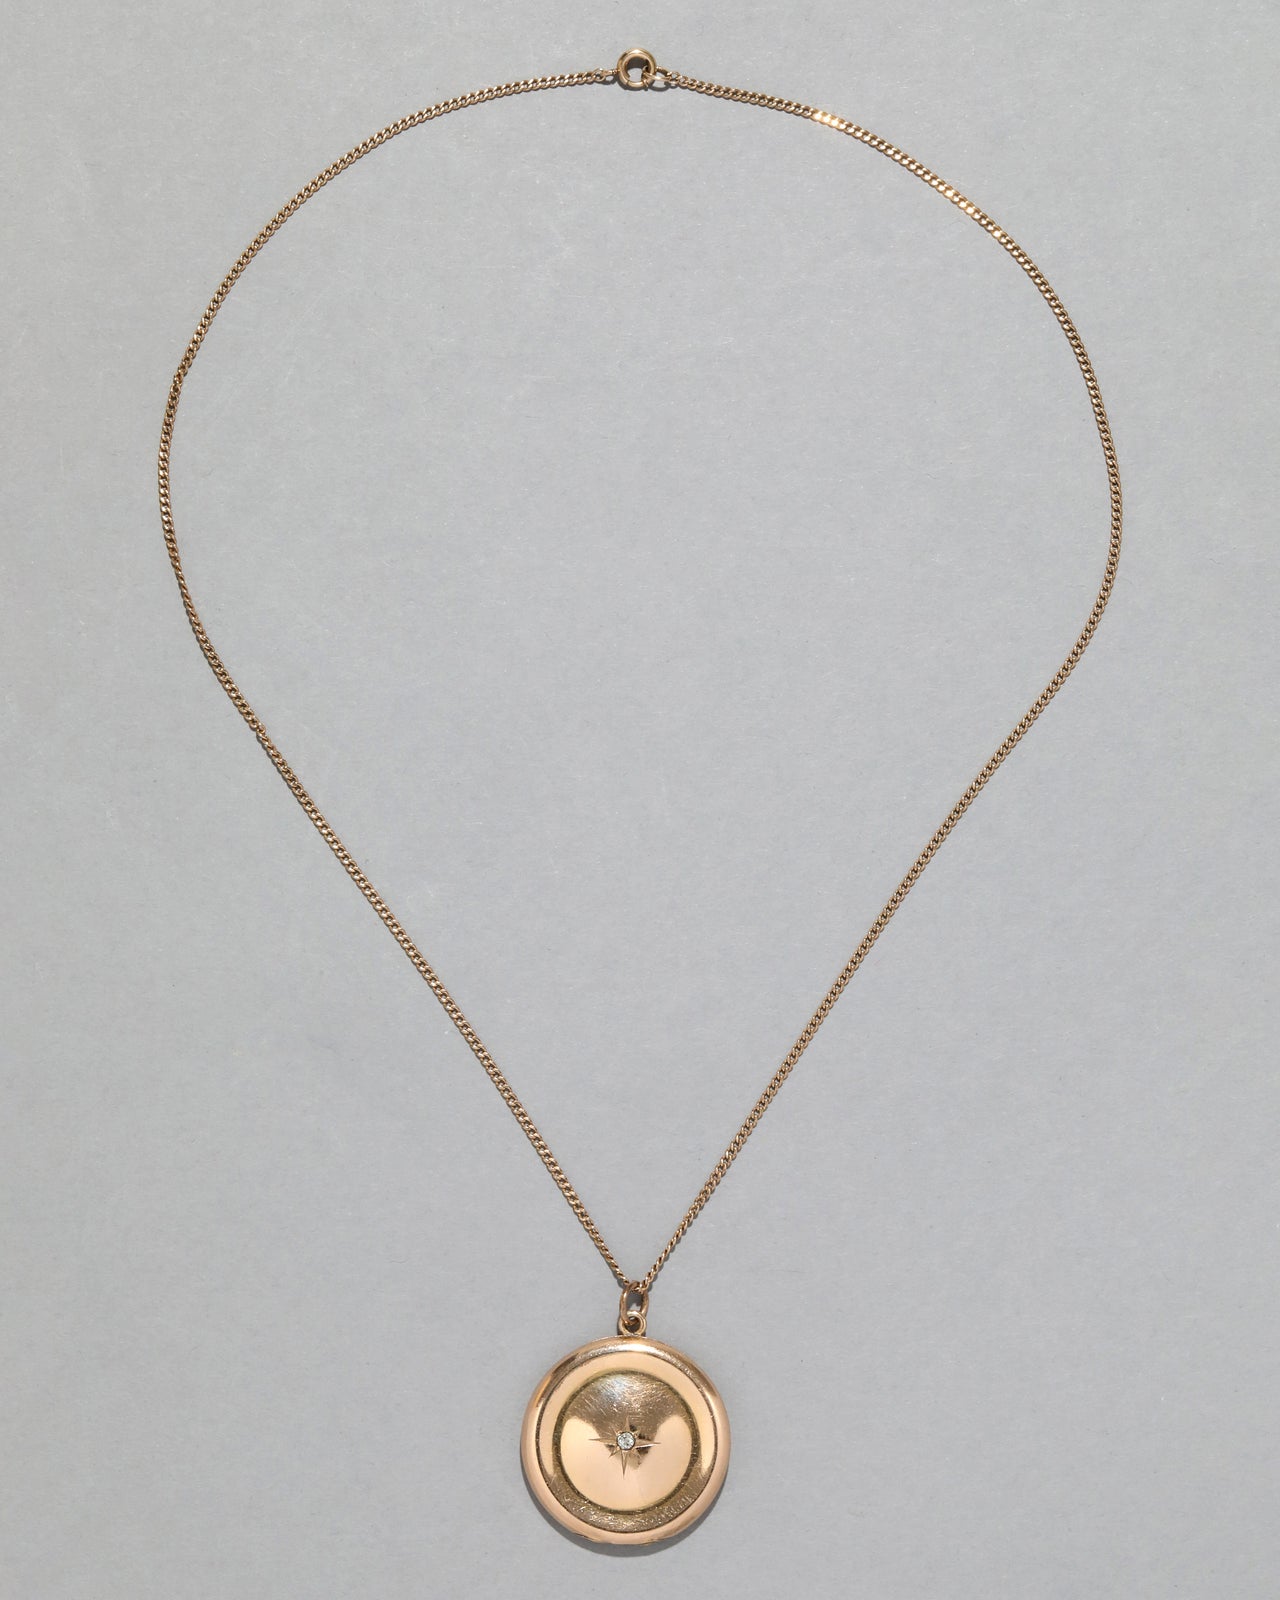 Antique 1910s 14k Gold Filled Crystal Starburst Locket Necklace - Photo 2